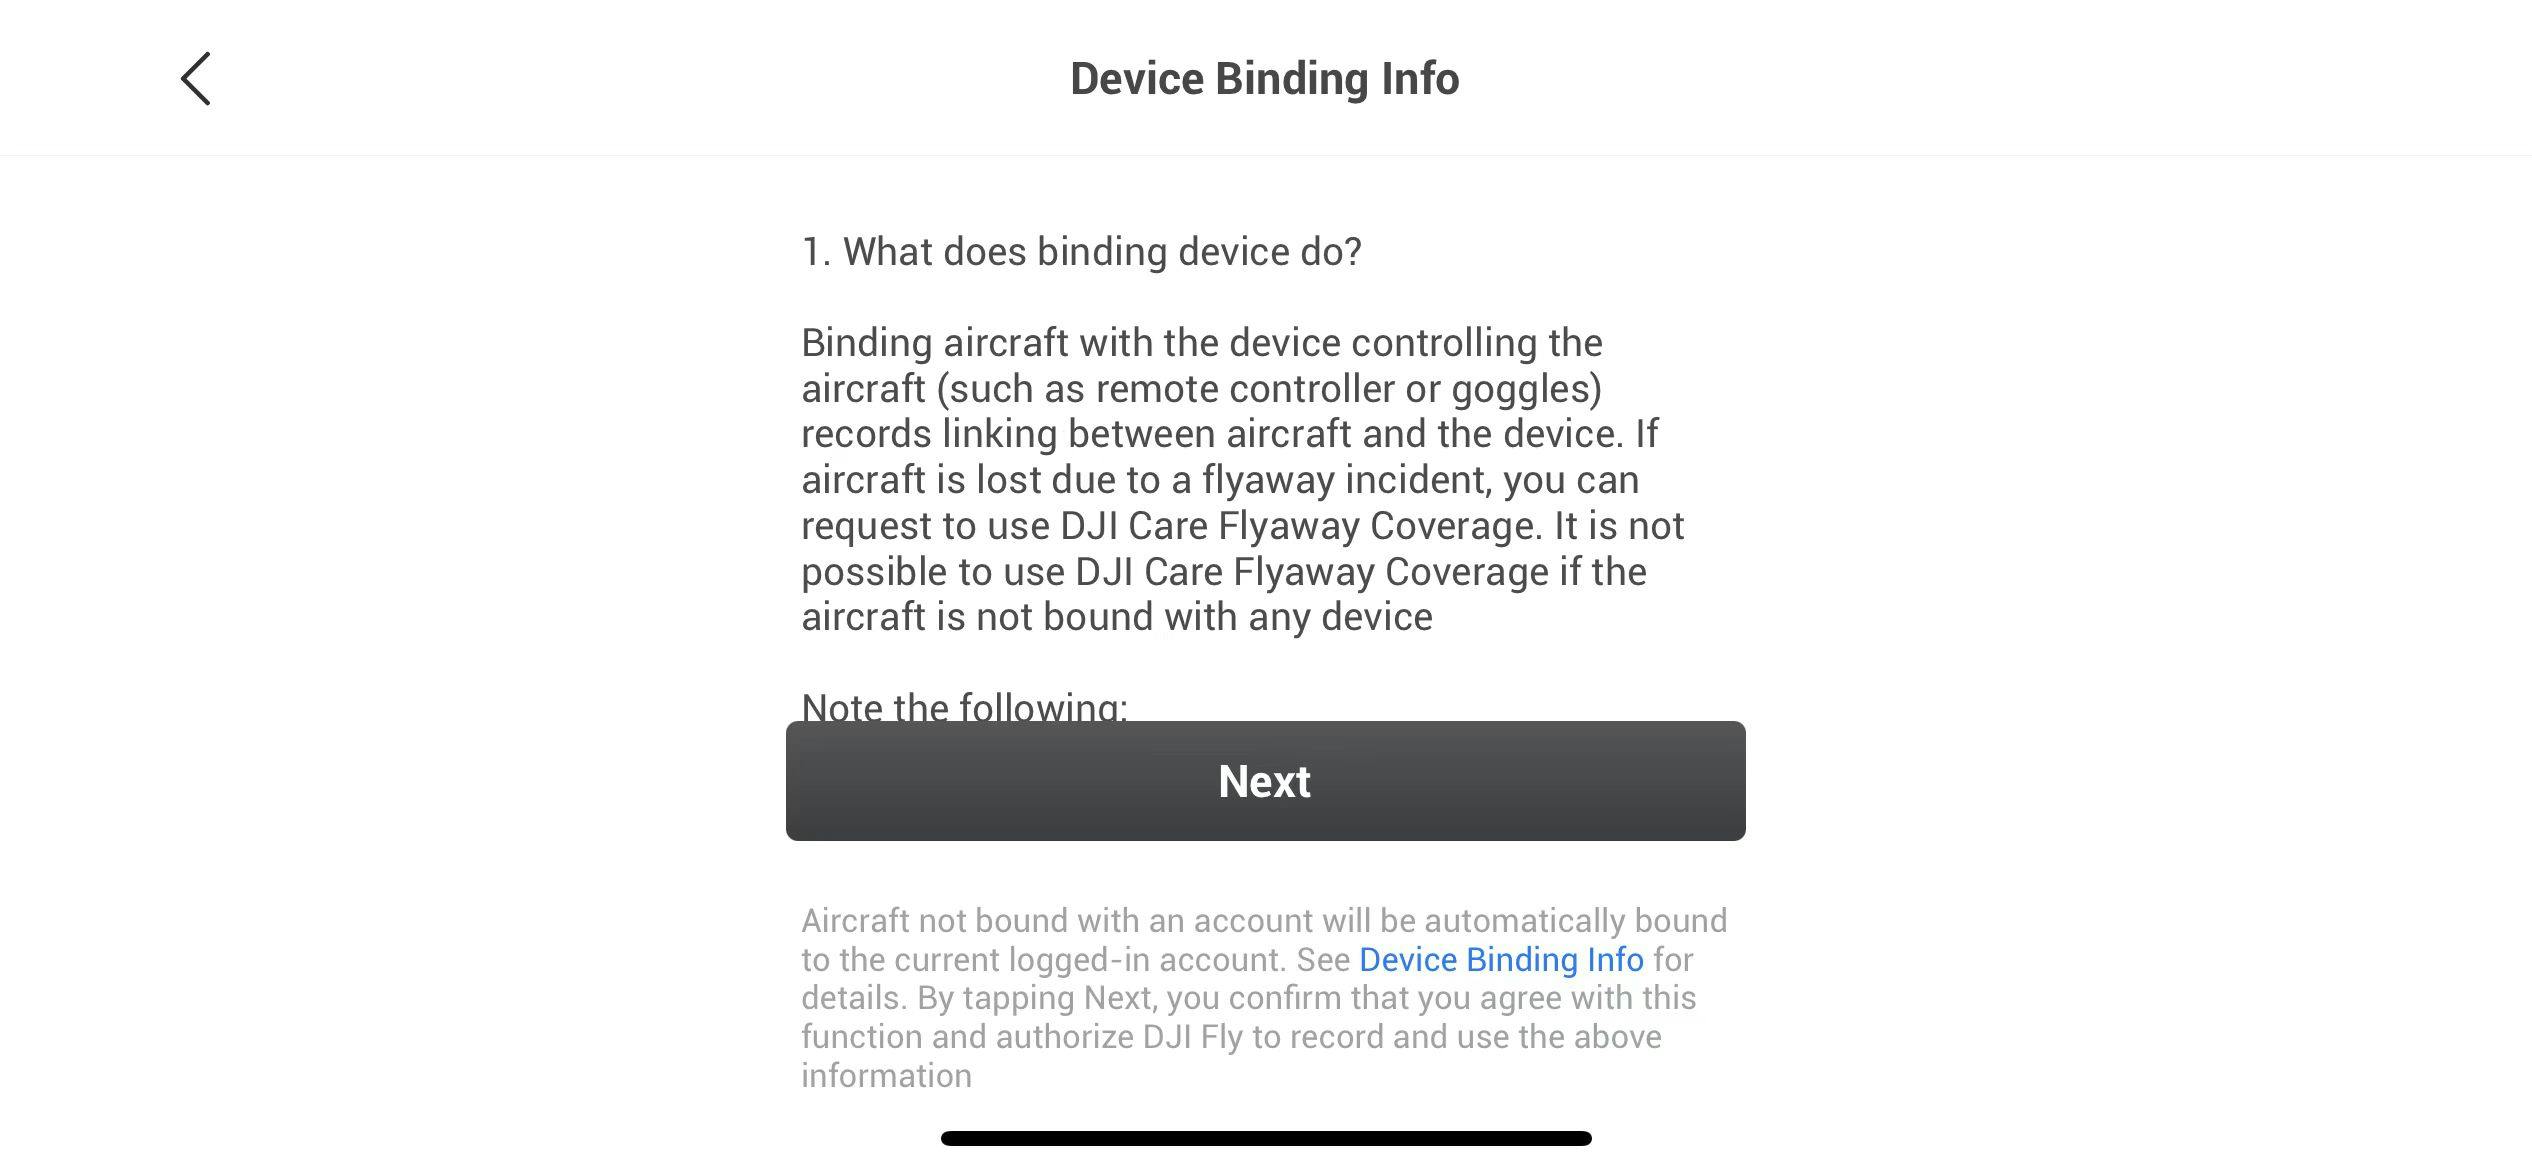 En skärmbild av en informationssida med rubriken "Device Binding Info". Texten förklarar att enheten kopplas till flygplanet för att skapa en koppling. Om flygplanet går förlorat kan DJI Care Flyaway Coverage användas.